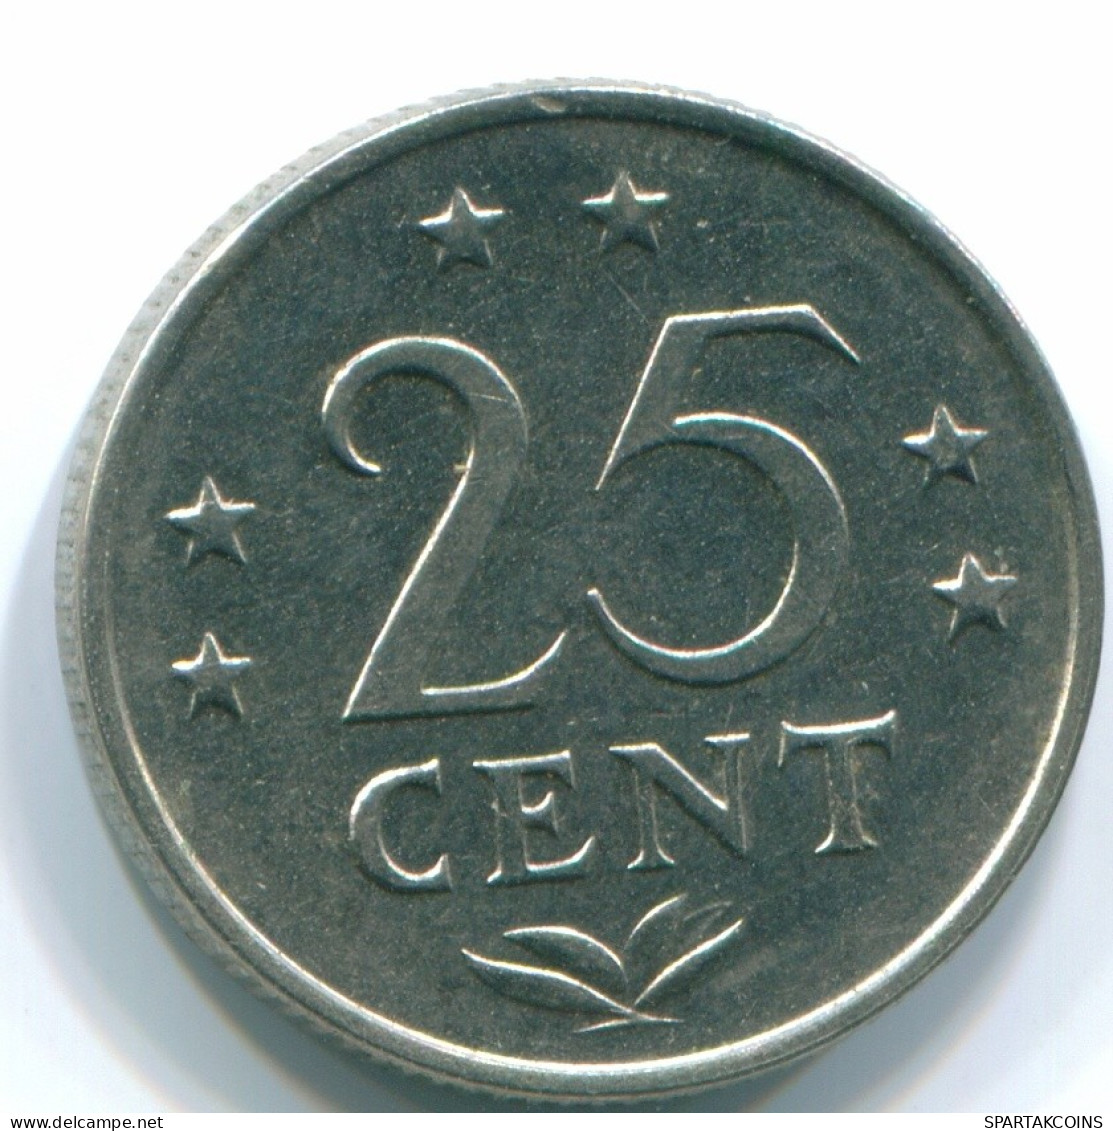 25 CENTS 1971 NETHERLANDS ANTILLES Nickel Colonial Coin #S11556.U.A - Niederländische Antillen